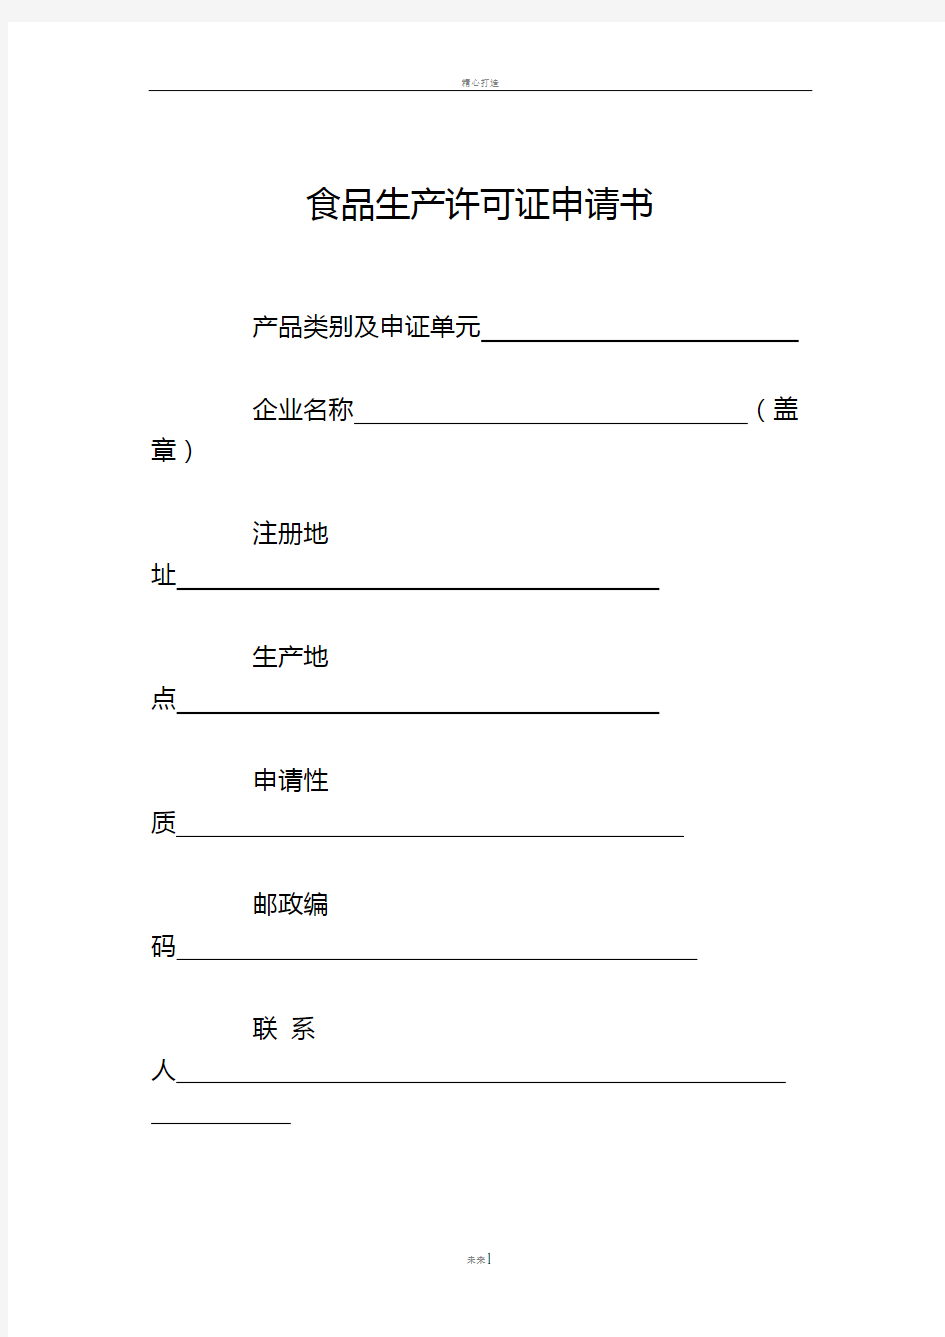 陕西省食品生产许可证申请书(2014版)